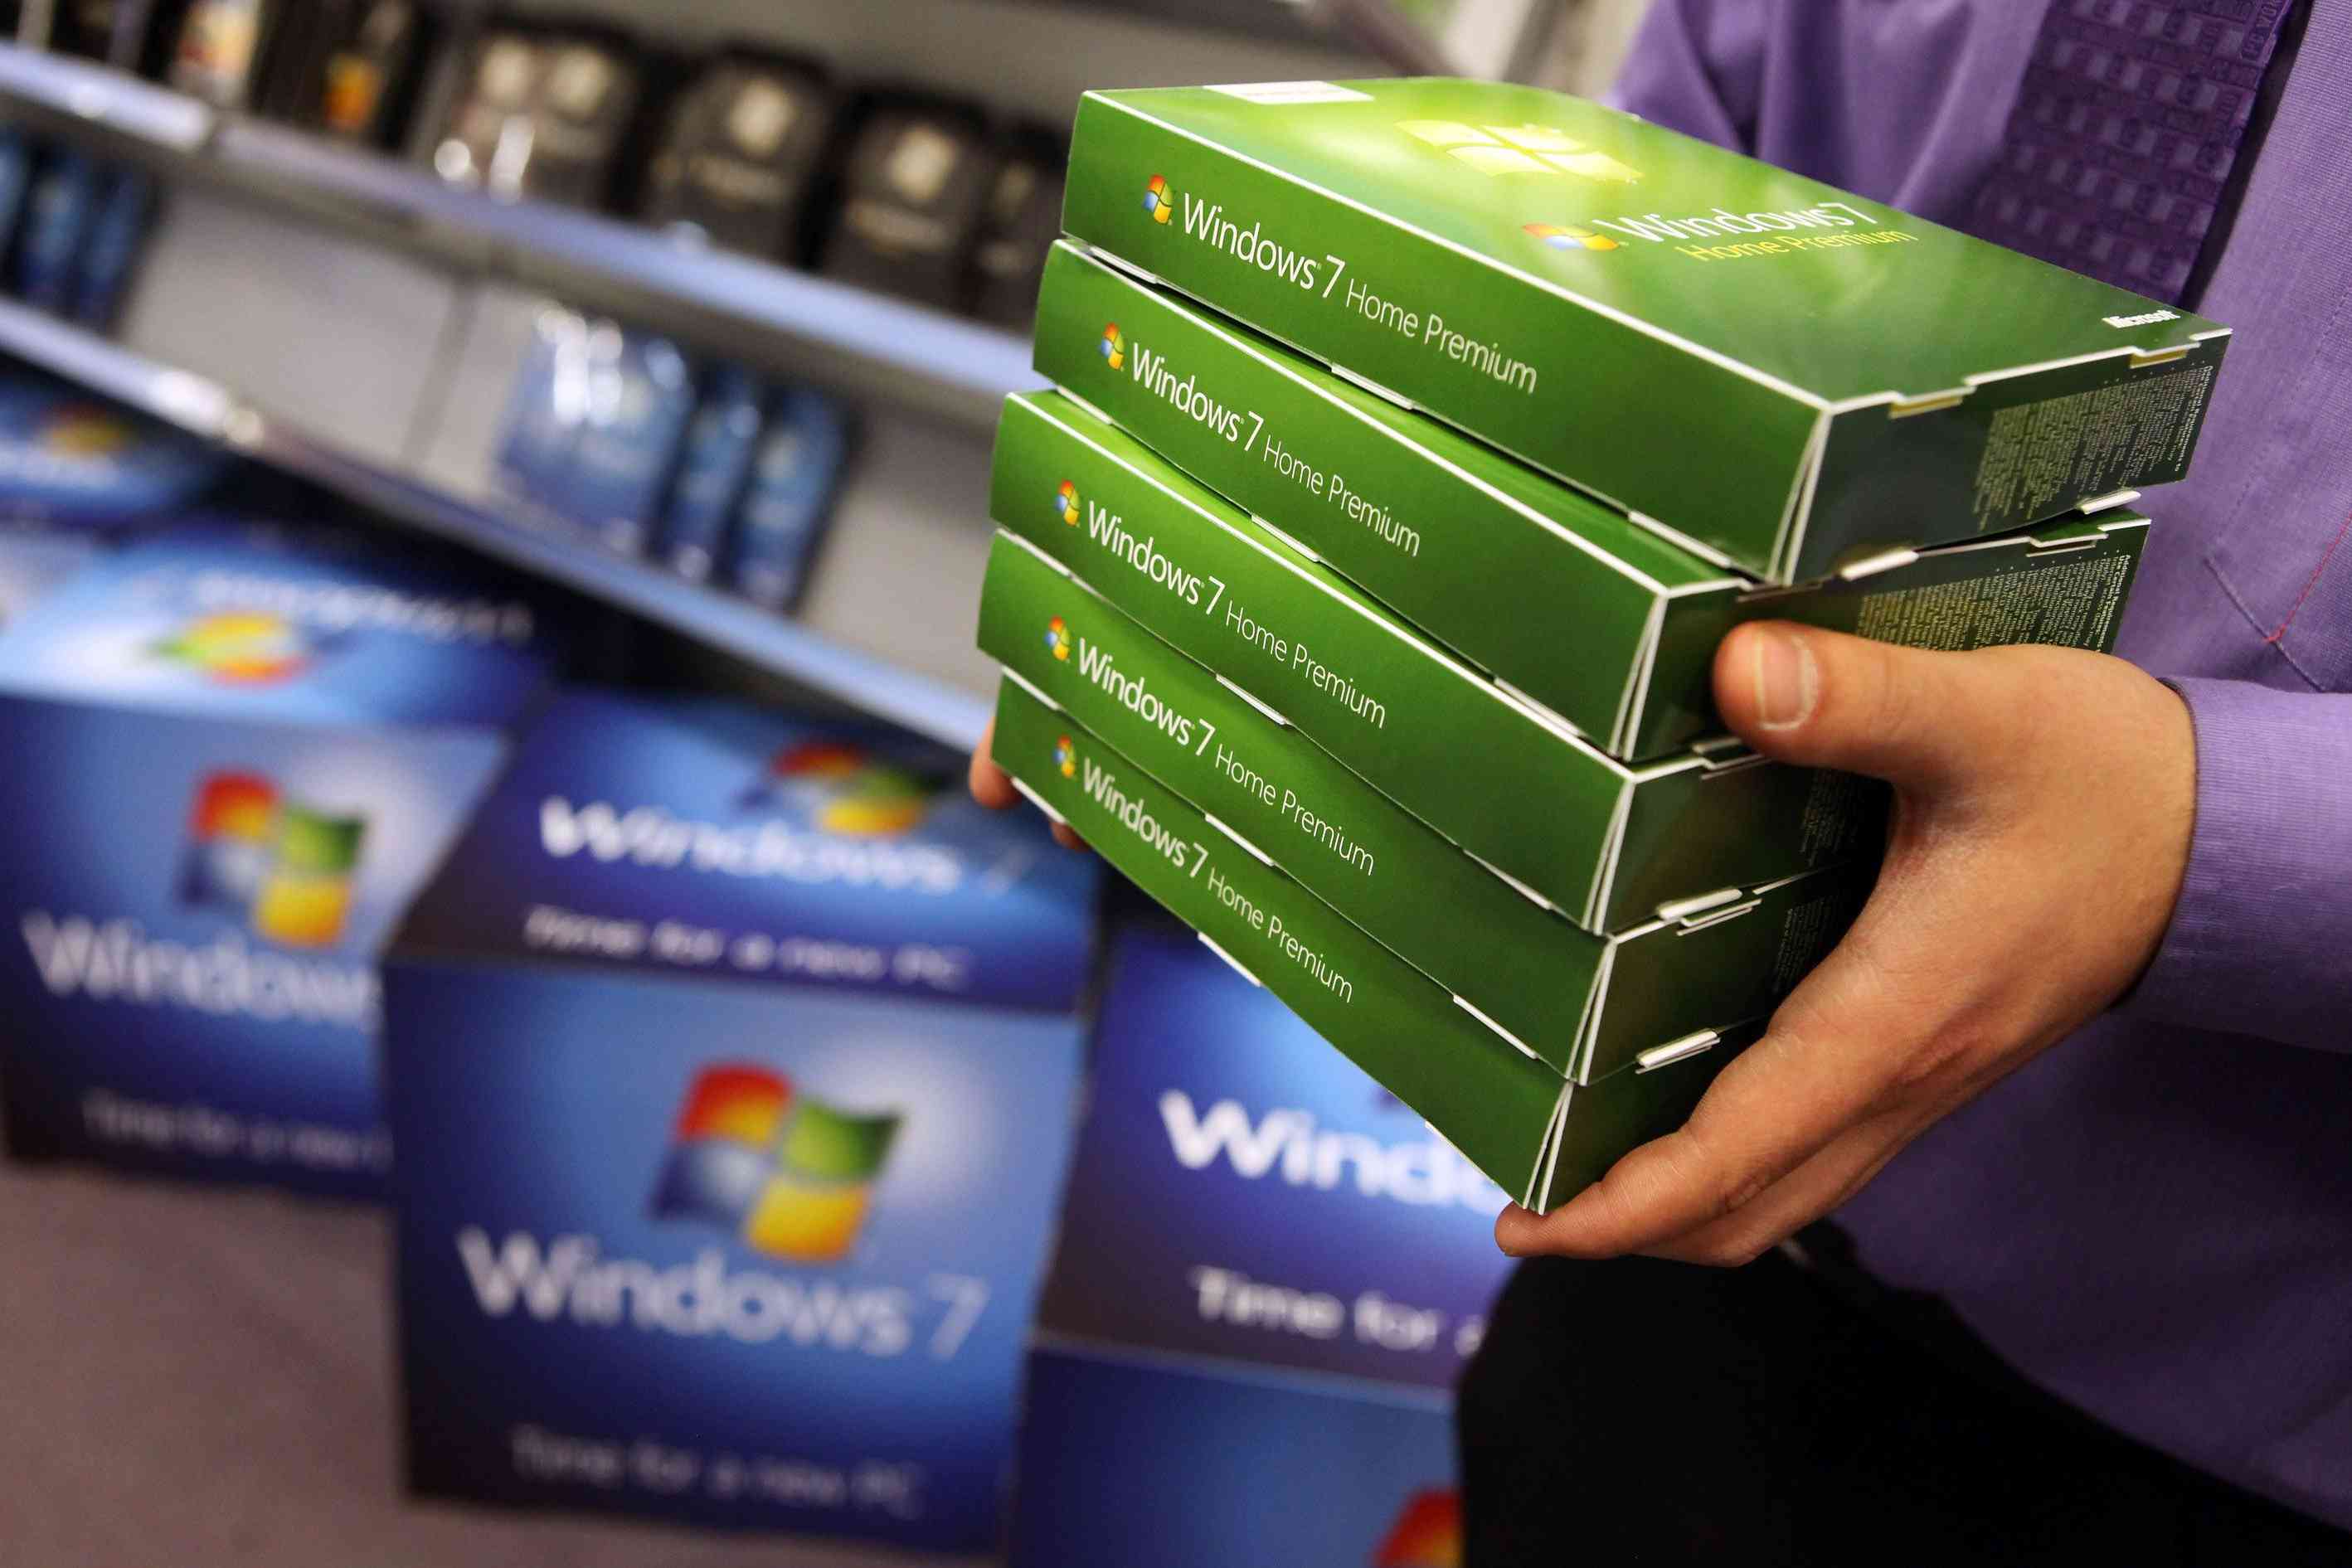 Pessoa segurando caixas de software do Windows 7